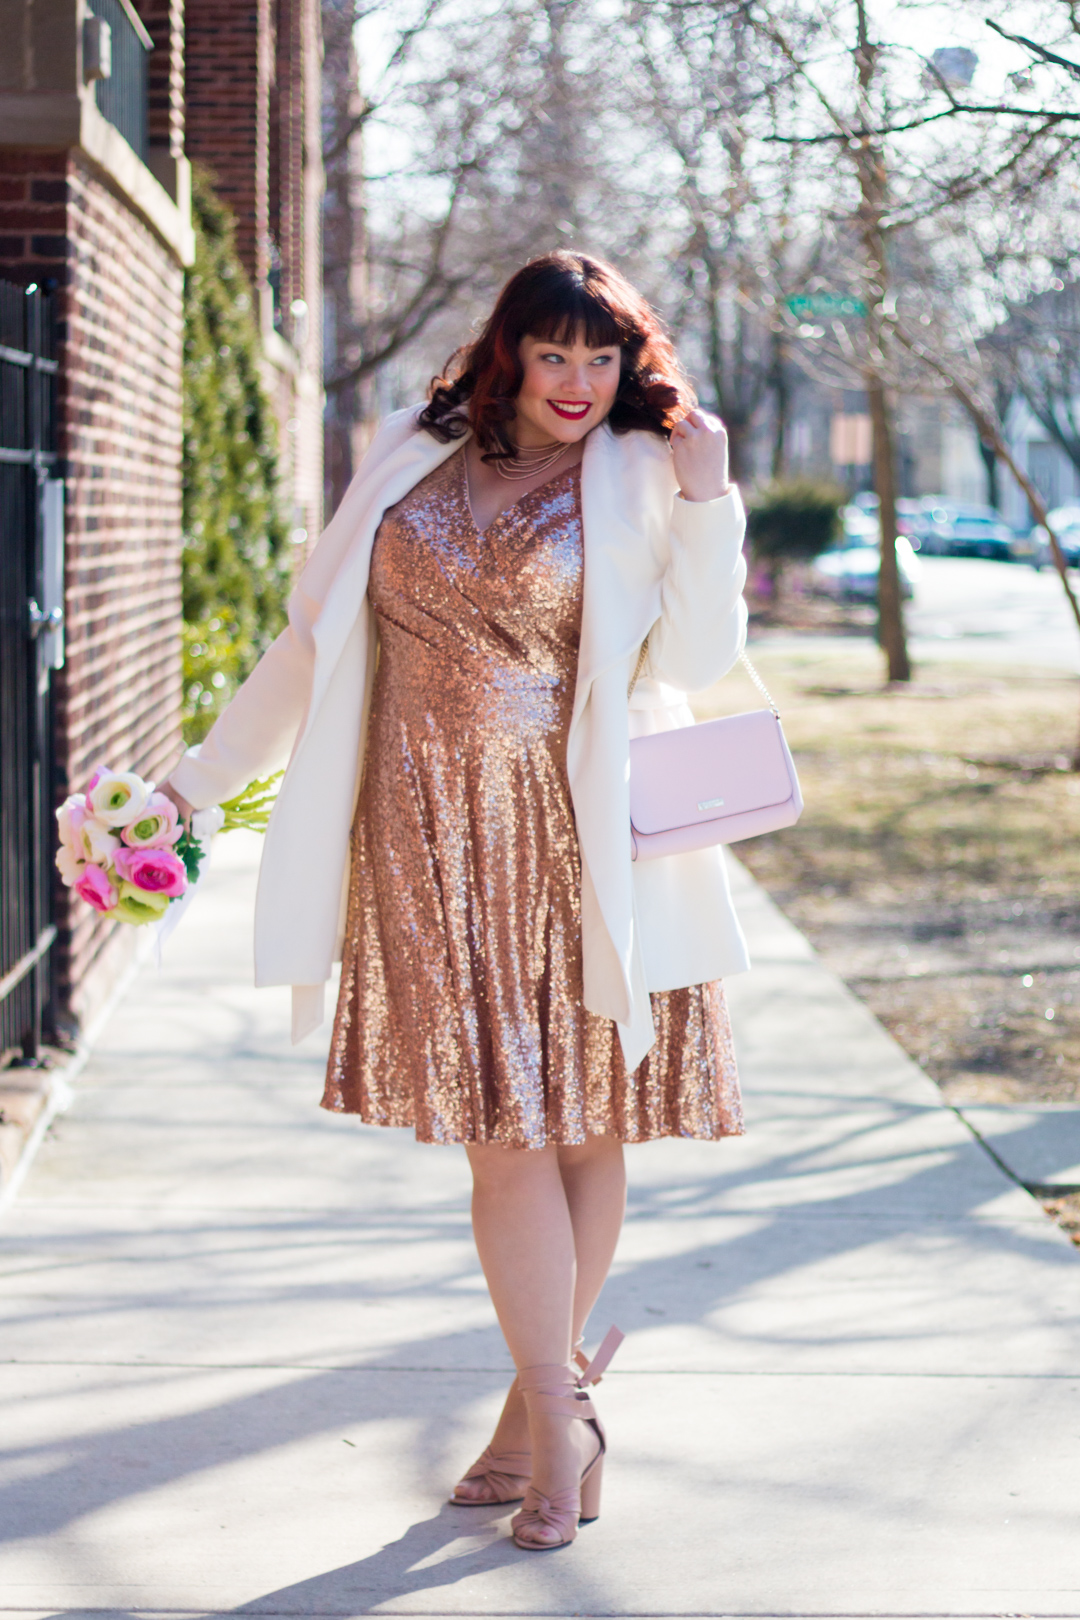 Sydney's Closet, Rose Gold Sequin Dress, Plus Size Cocktail Dress, Chicago Blogger, Plus Size Blogger, Style Plus Curves